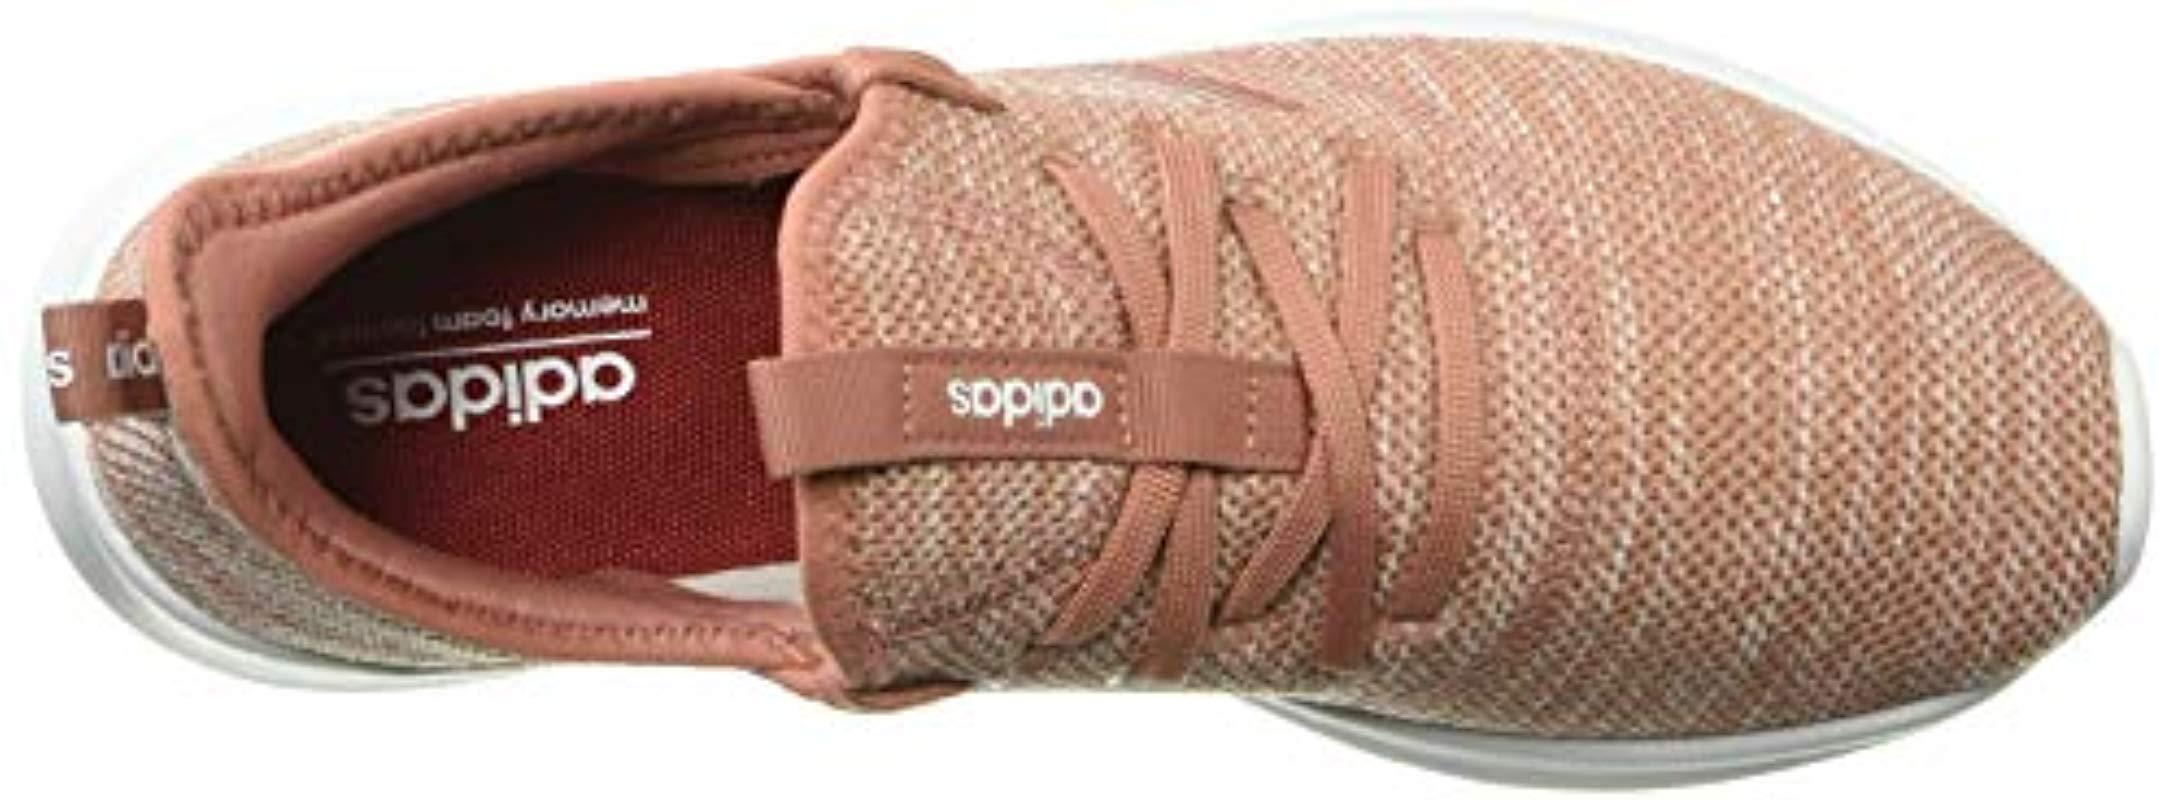 Cloudfoam Pure, Zapatillas de Running para Mujer adidas de color Rosa | Lyst